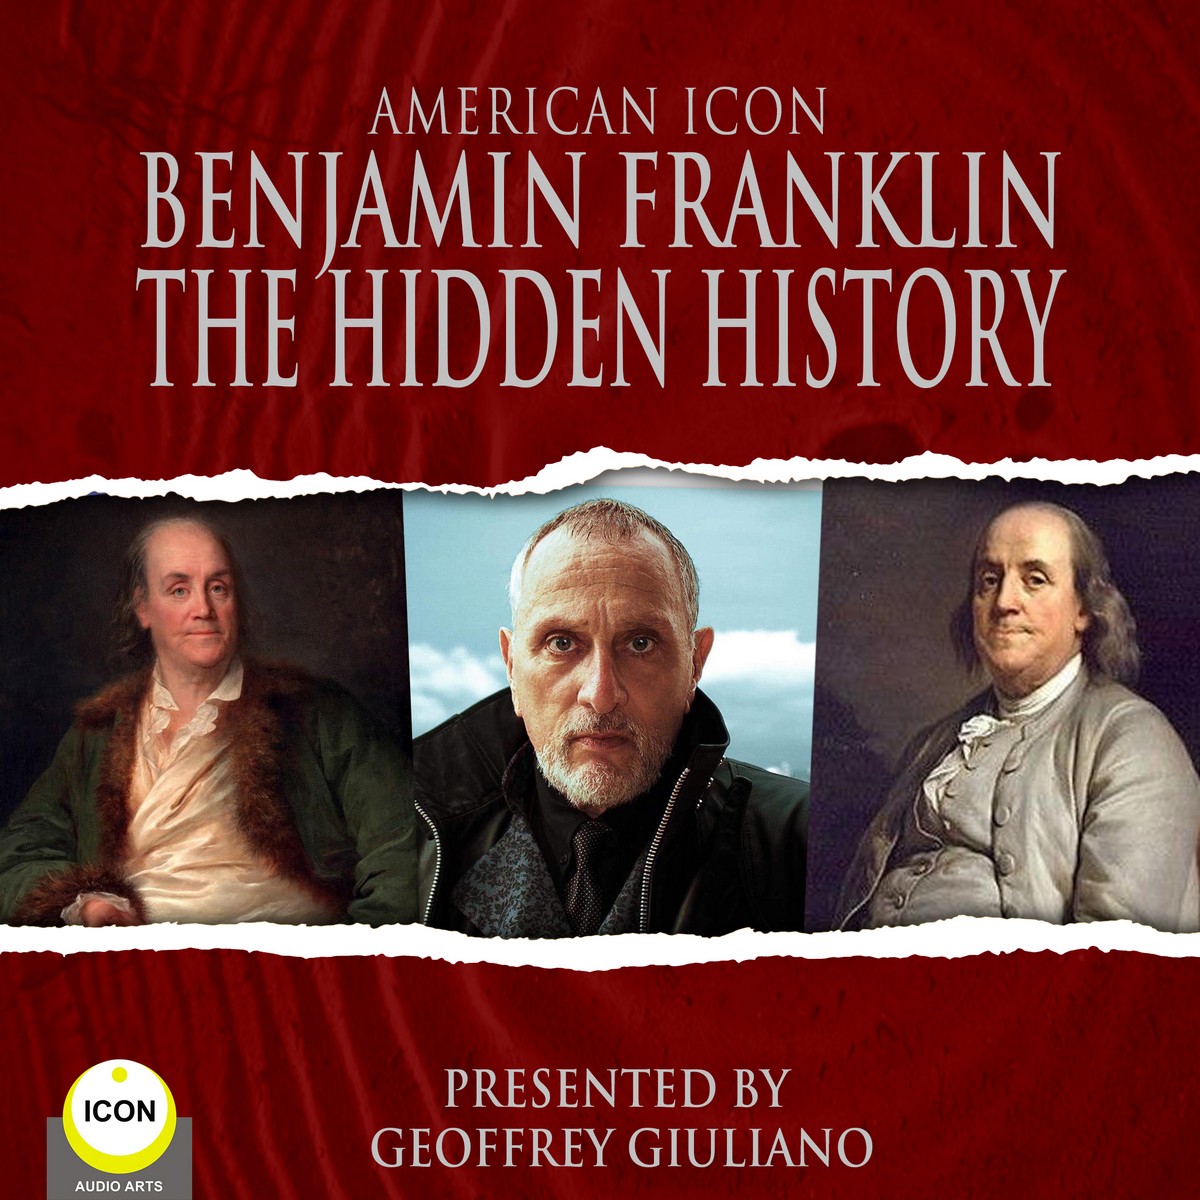 American Icon Benjamin Franklin The Hidden History